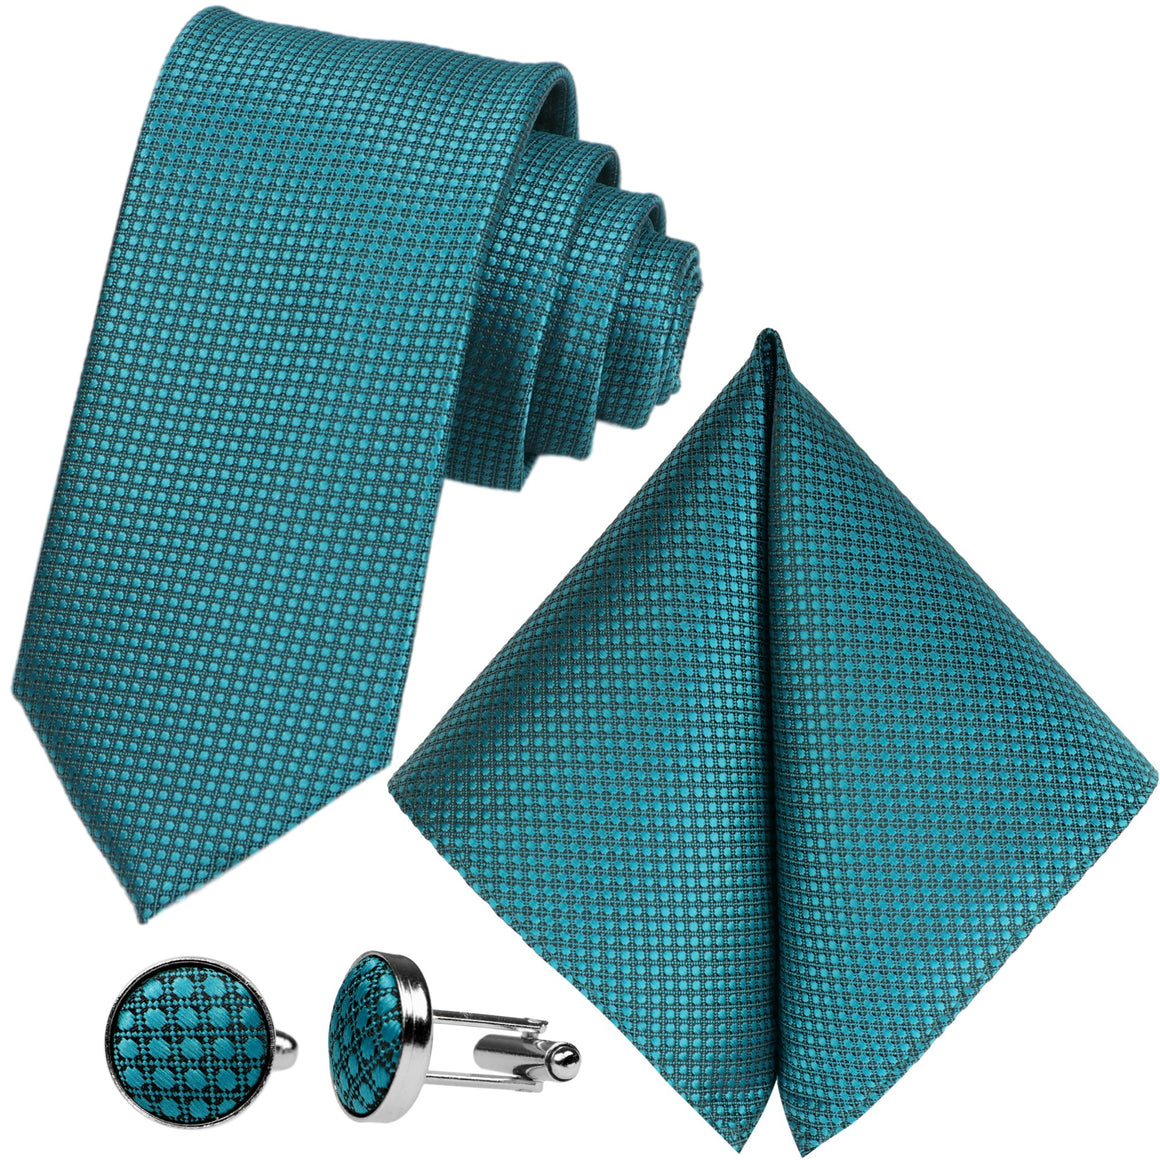 GASSANI 3 ks. Souprava, 8 cm úzká pánská kravata petrolejově modrá, extra dlouhá, svatební kravata, souprava kravat, pánská kravata, kapesník, manžetové knoflíčky